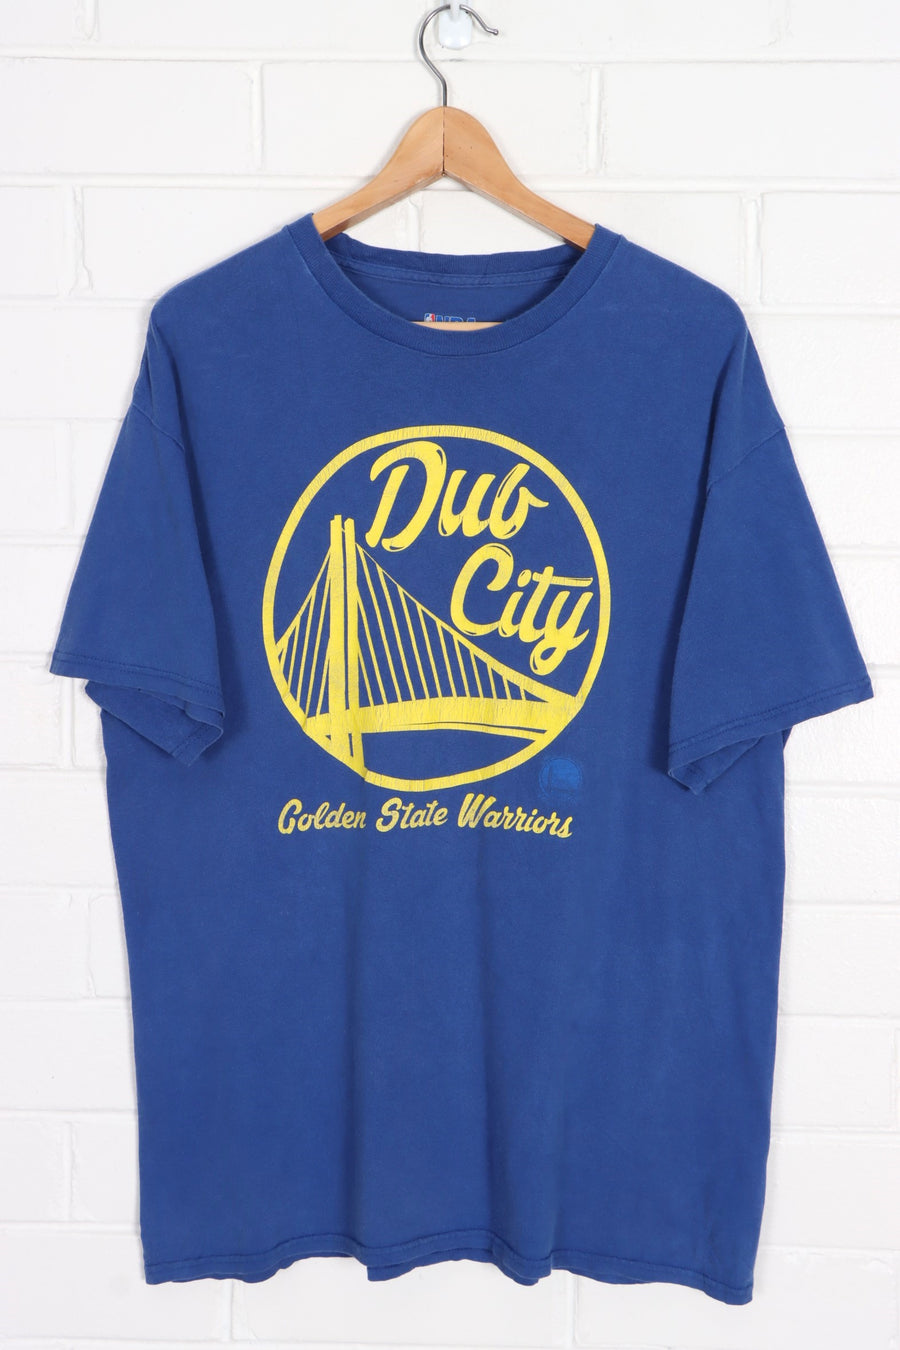 NBA Golden State Warriors "Dub City" T-Shirt (L)